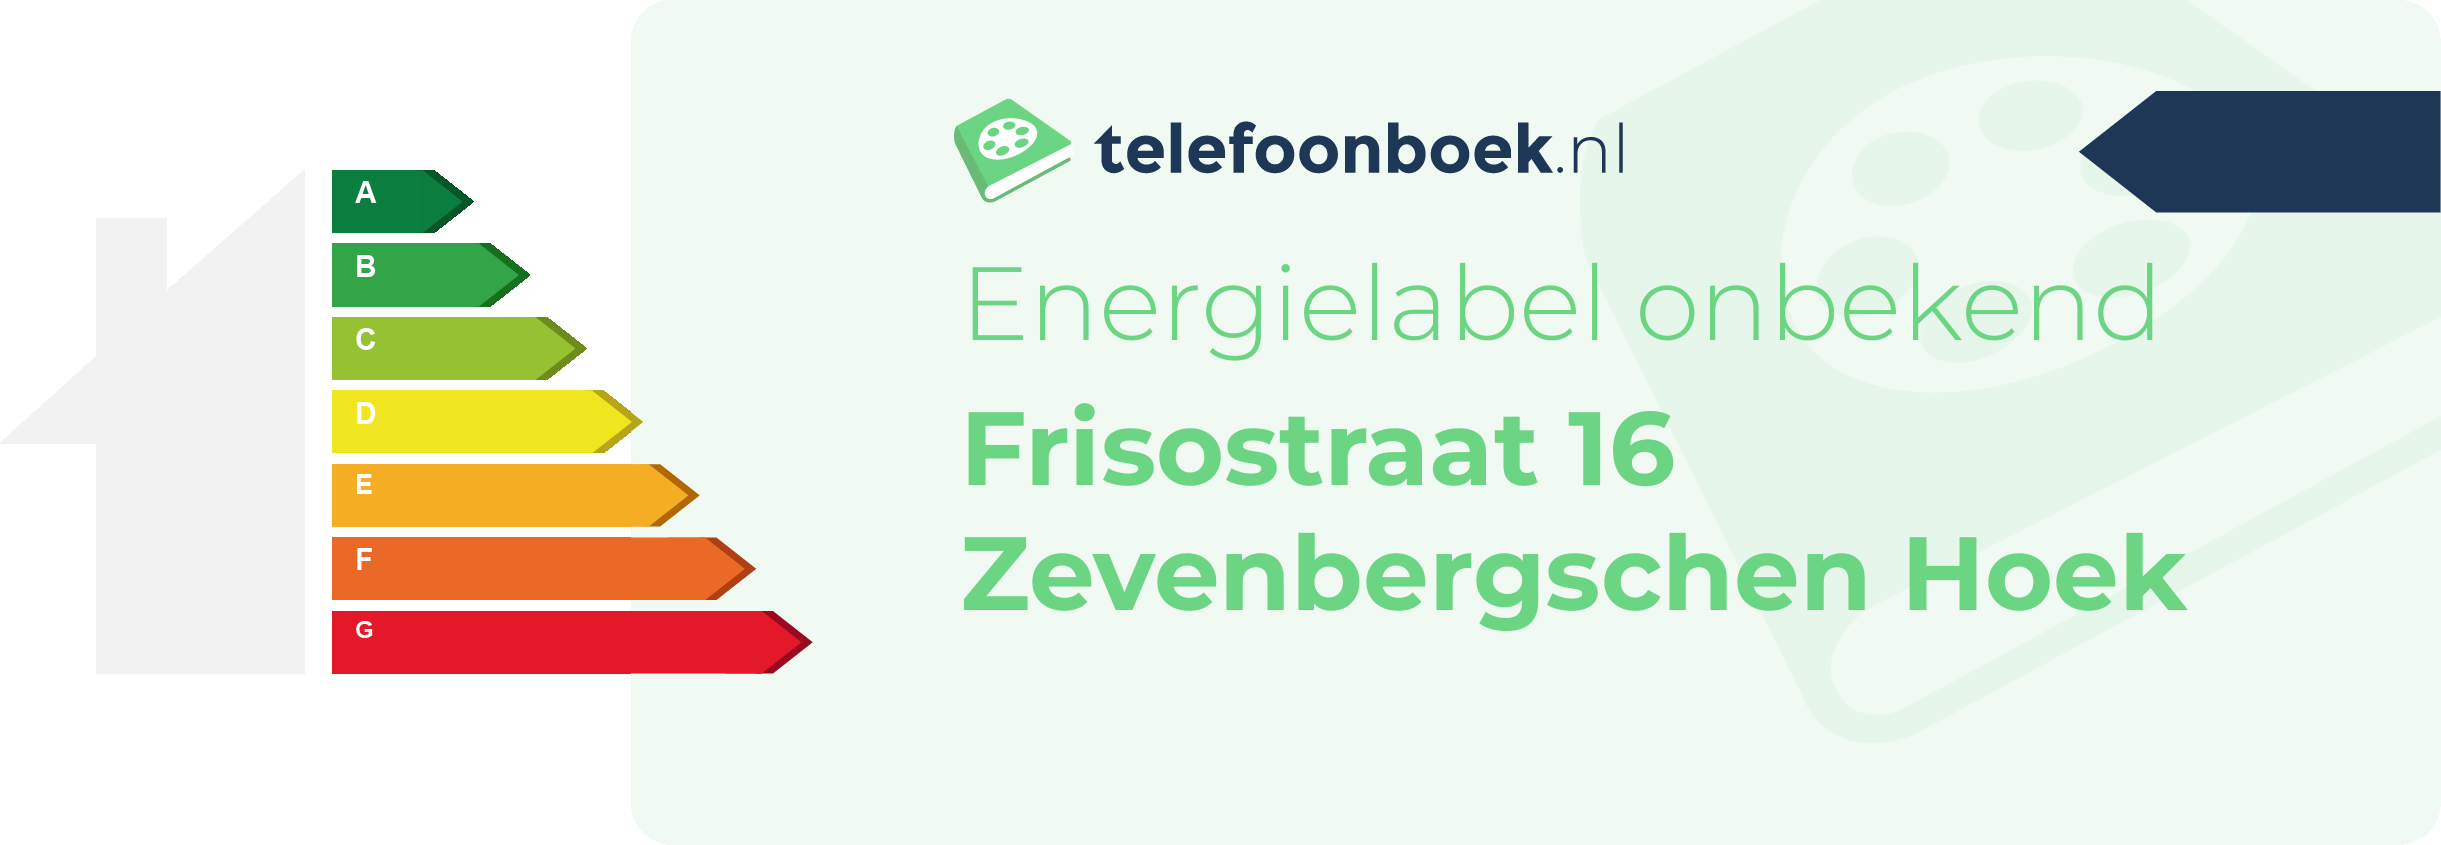 Energielabel Frisostraat 16 Zevenbergschen Hoek